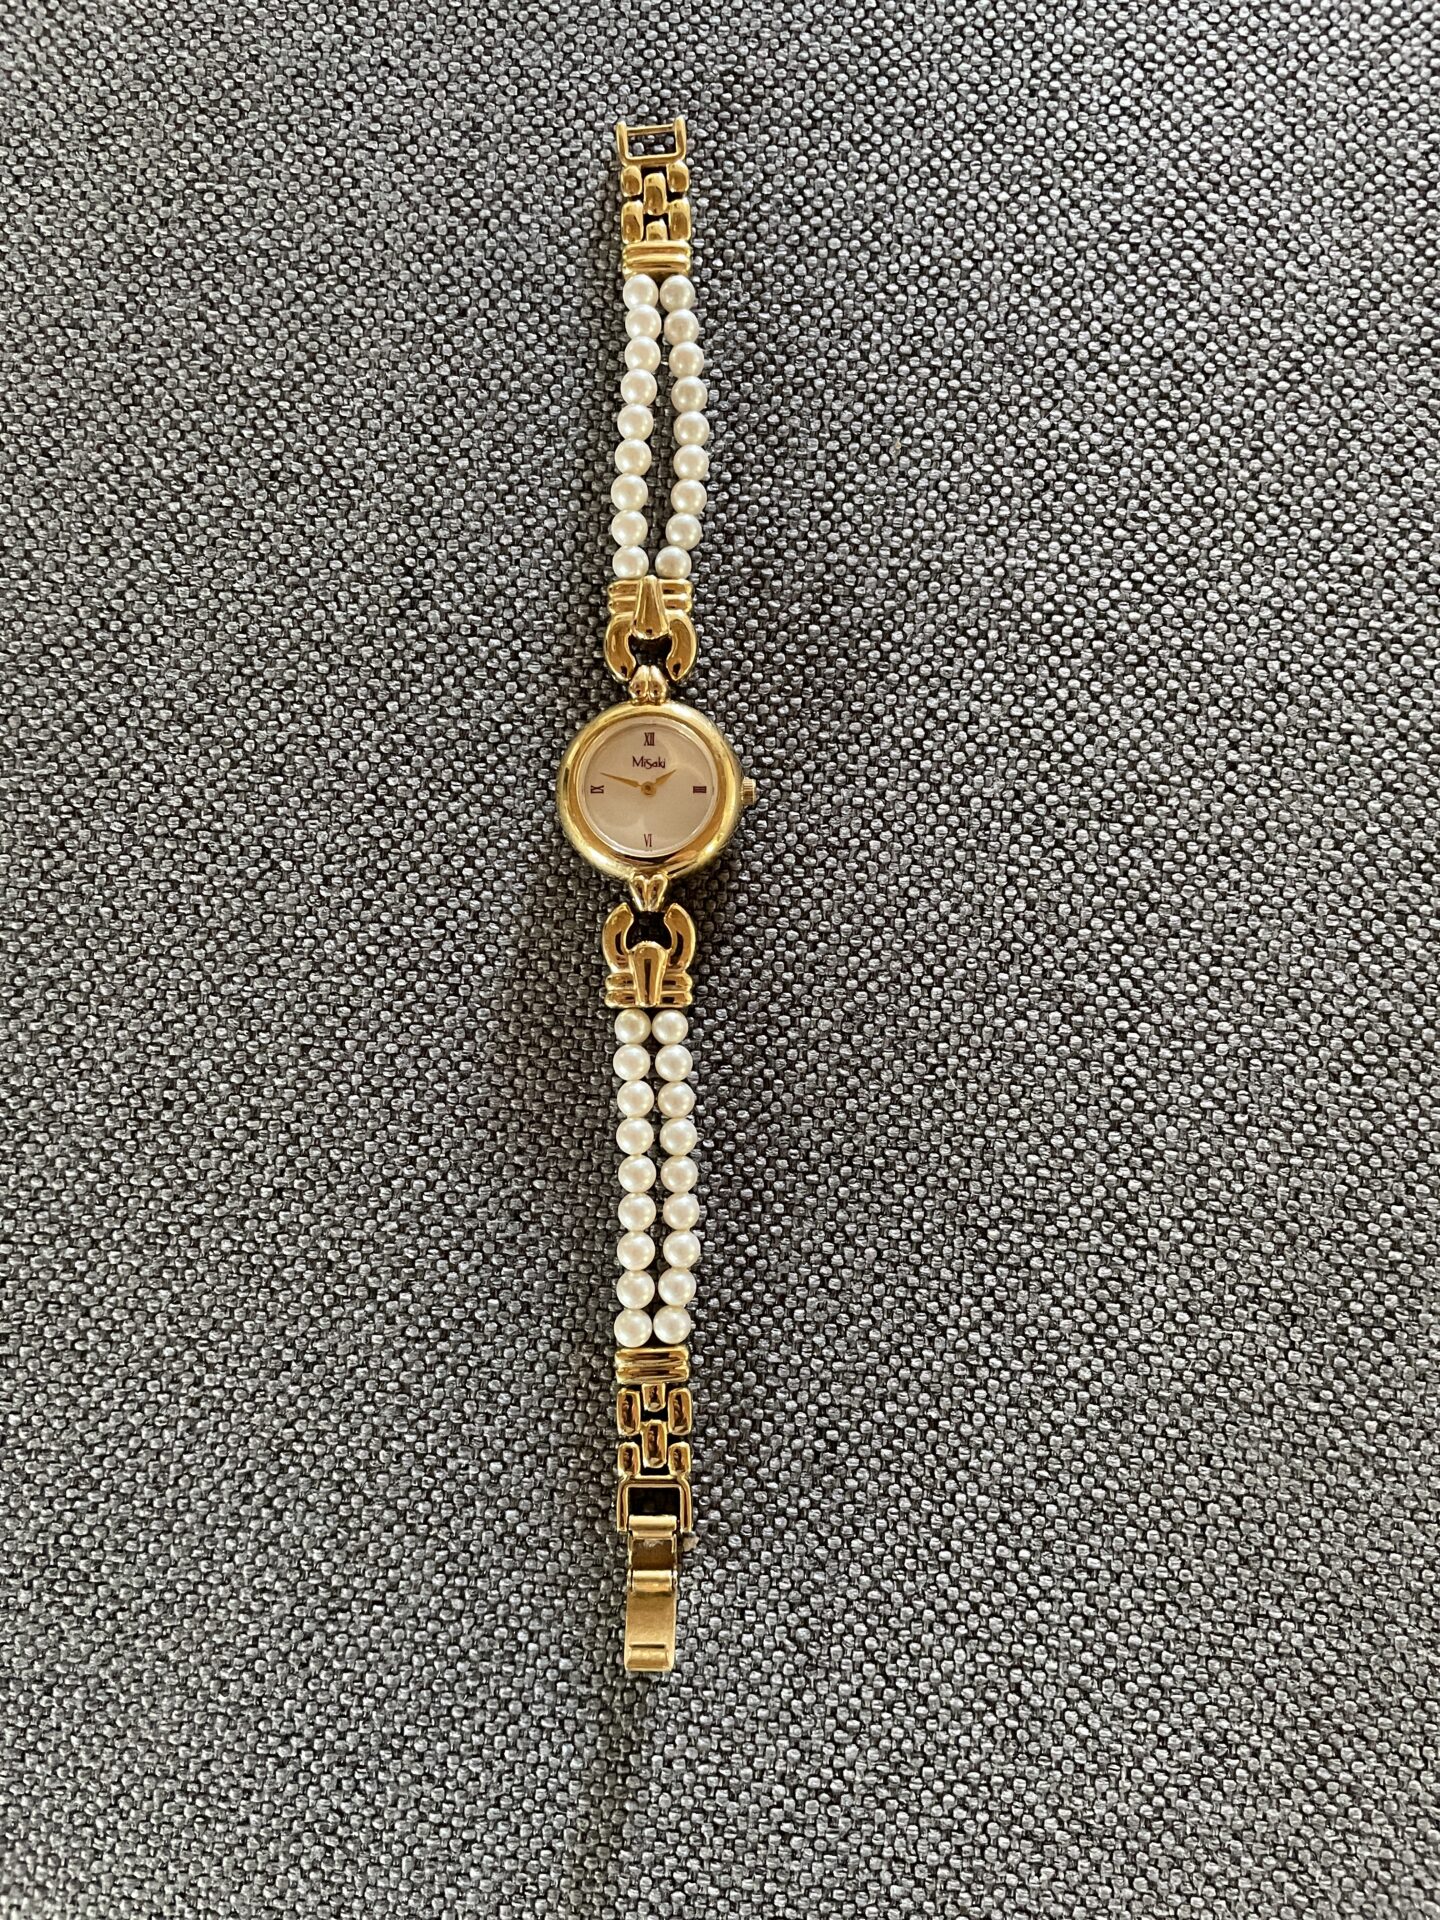 MiSaki, smykkeur med kæde af Japanese pearls, pris 500kr